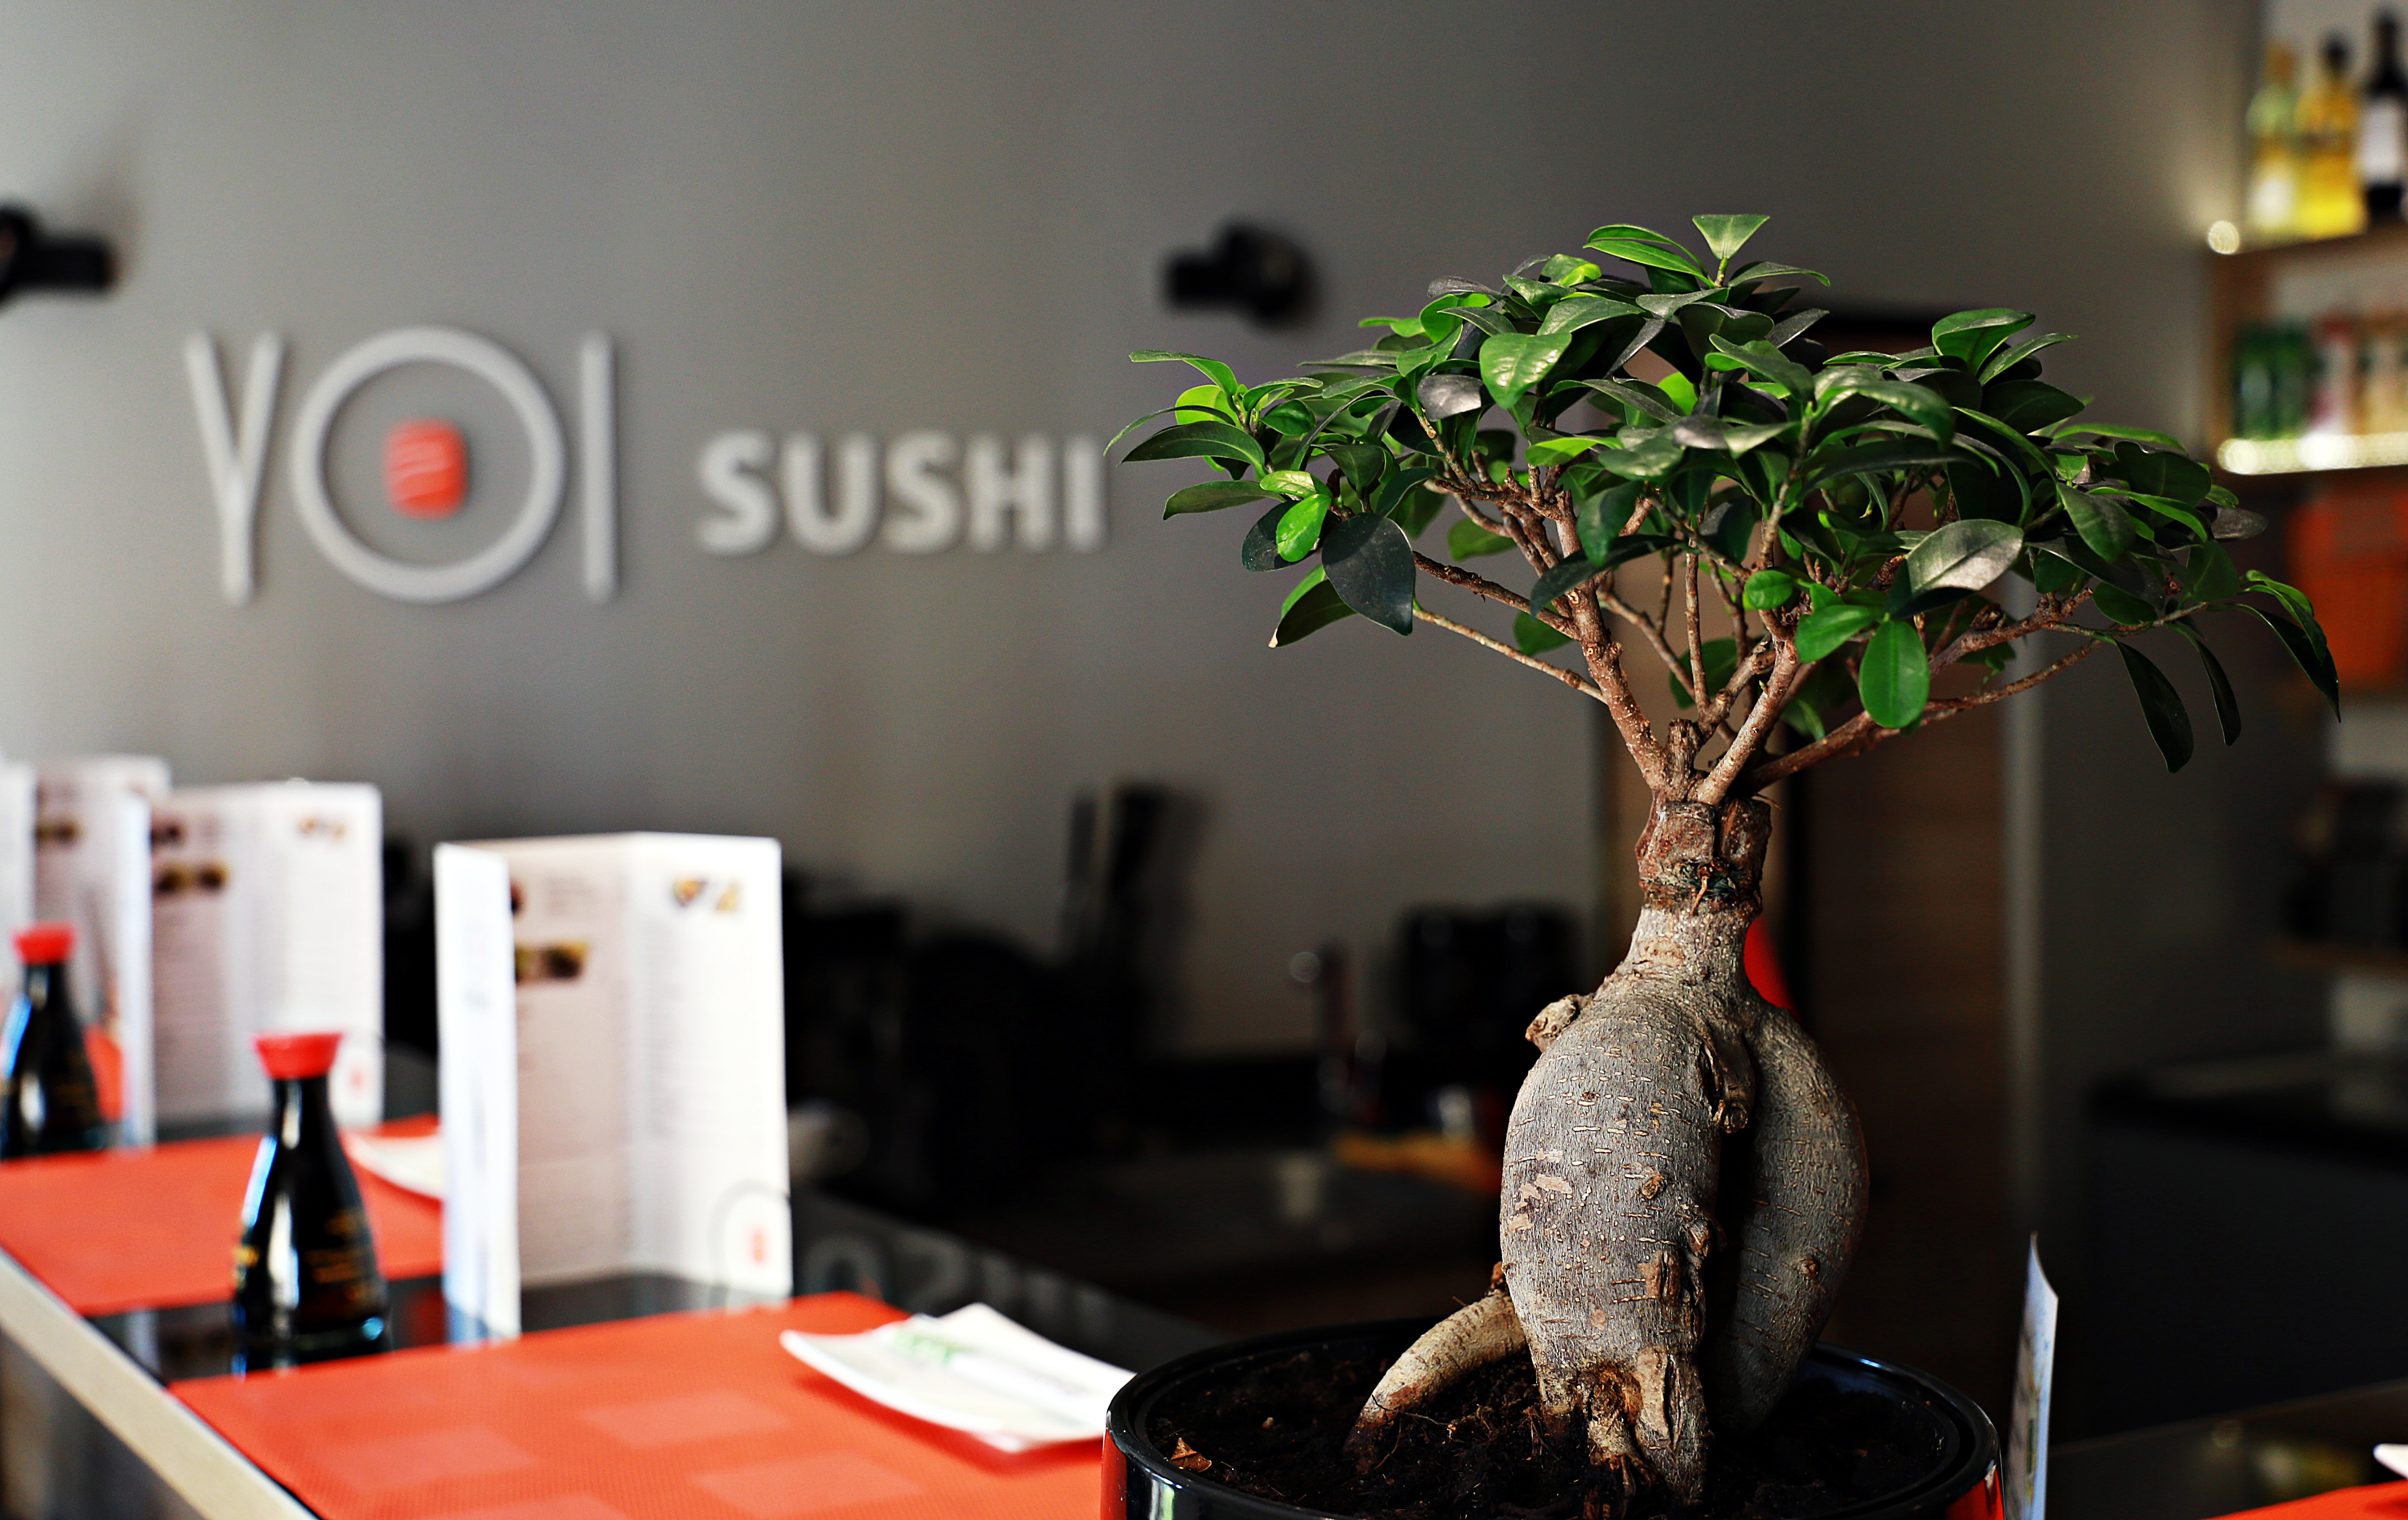 Restauracja Yoi Sushi Olsztyn - Przerwa